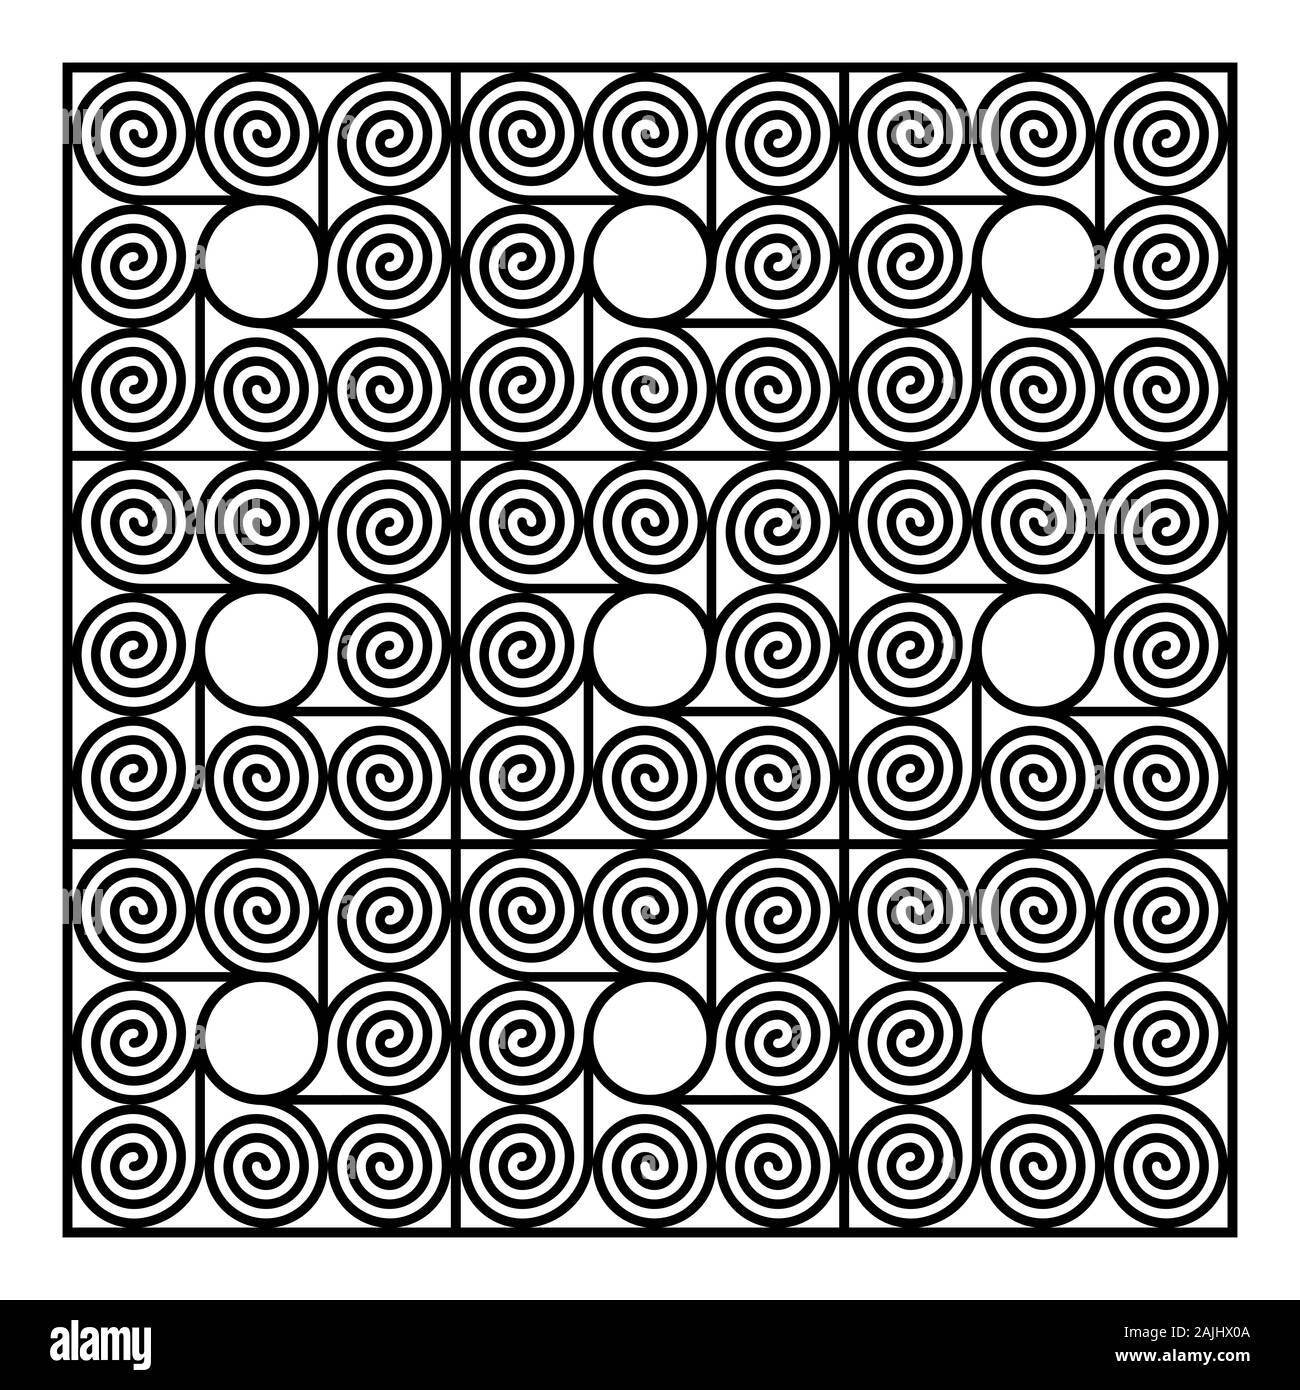 Sfondo di nove di forma quadrata piastrelle, fatta di otto spirali aritmetica intorno a un cerchio. Modello di spirali di Archimede di intervalli uguali. Foto Stock